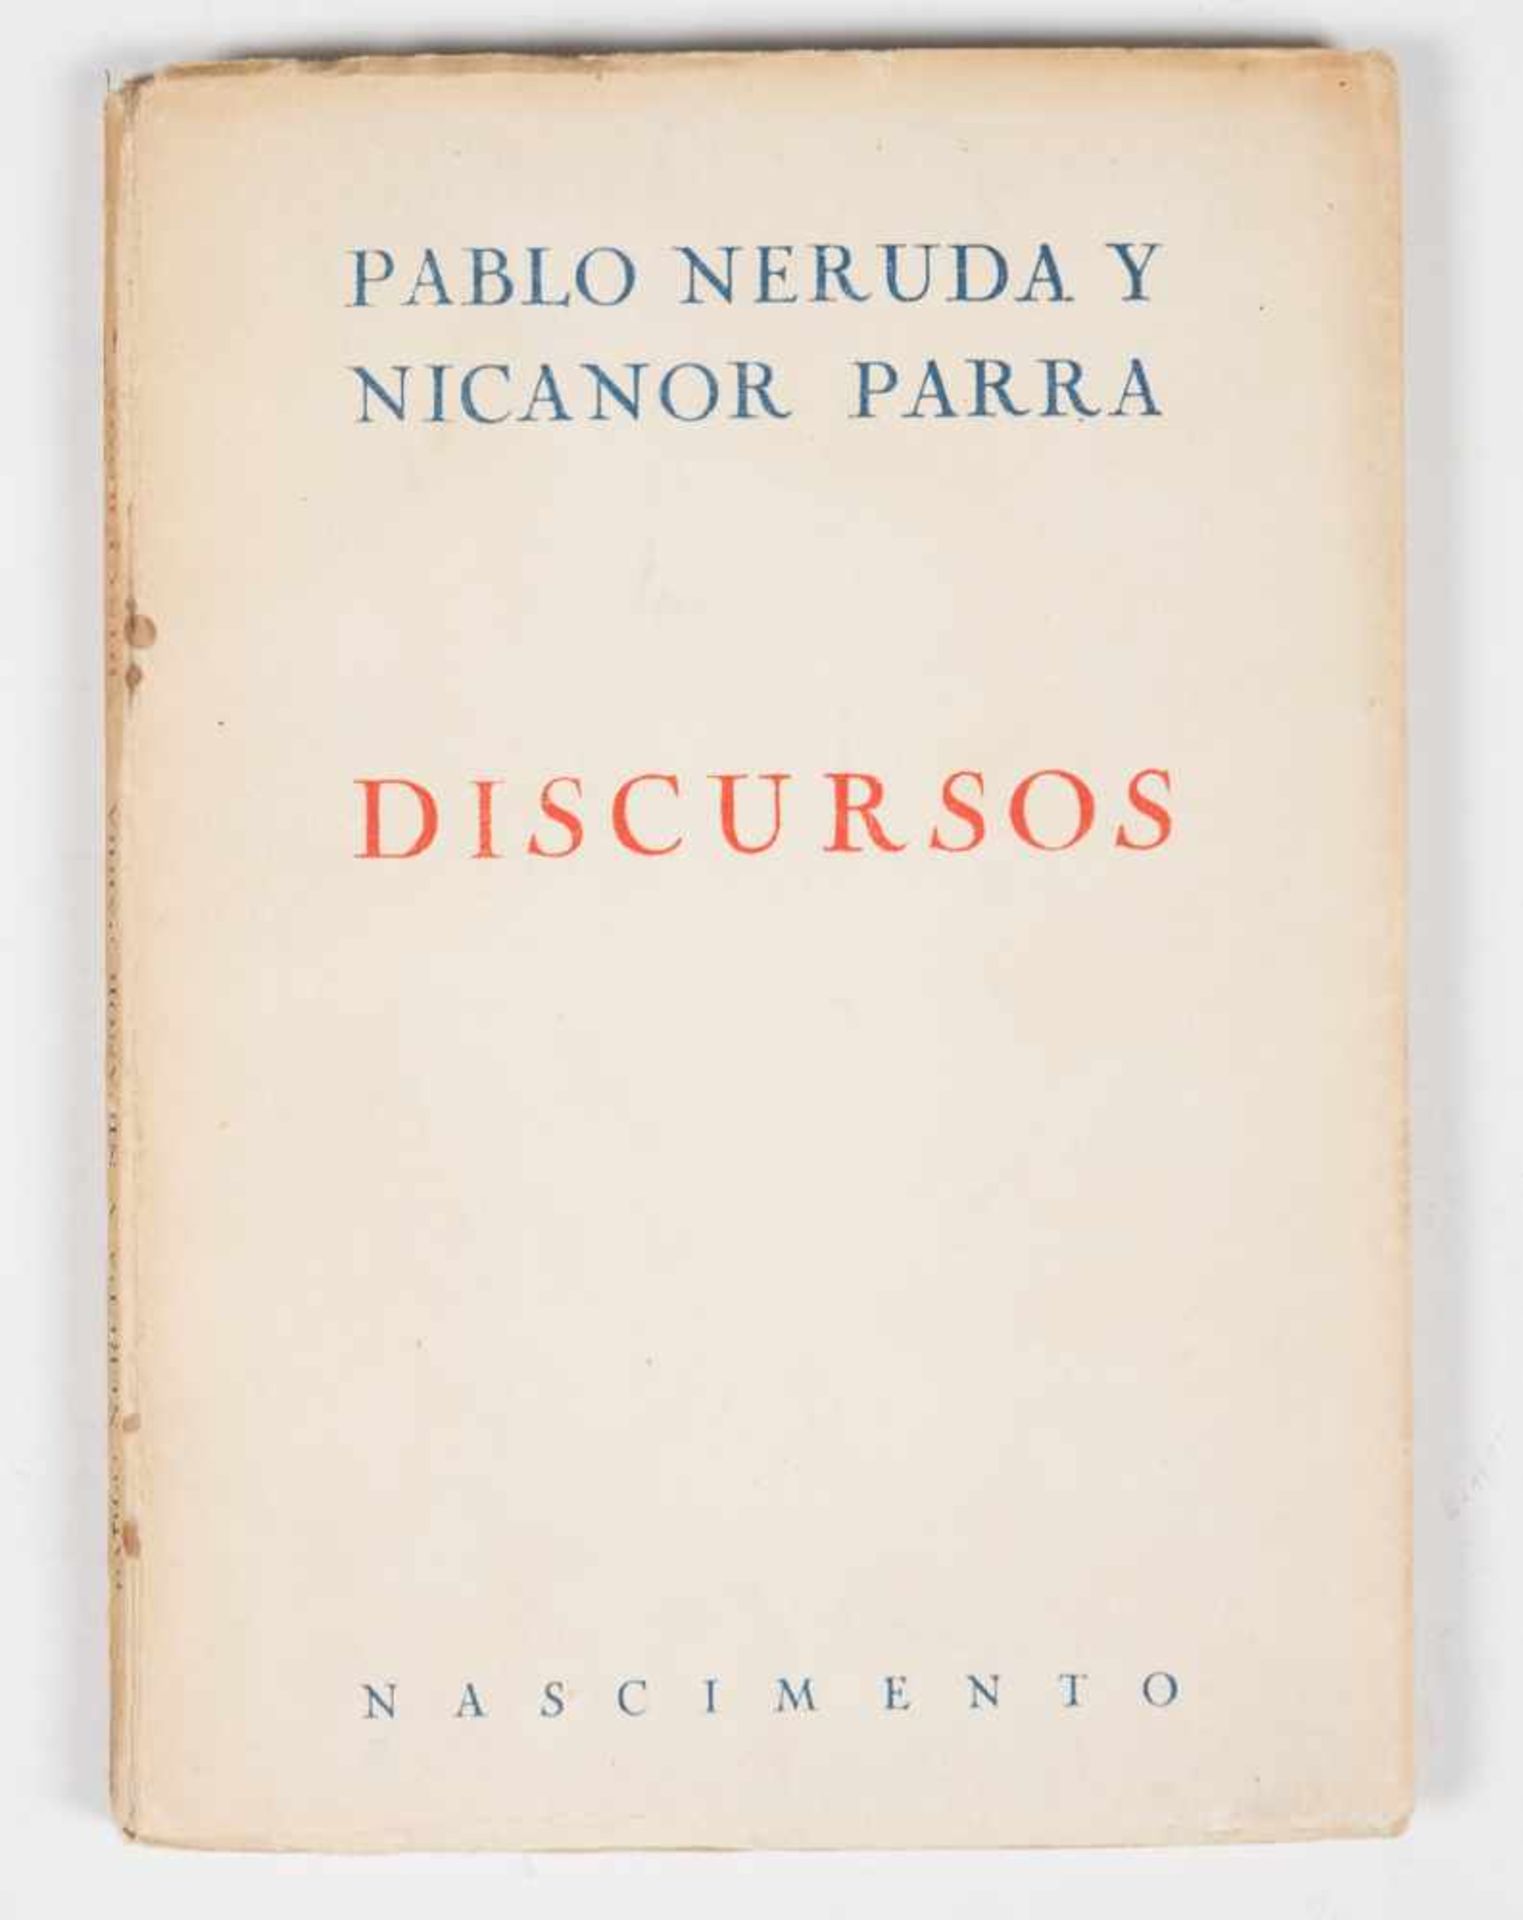 Neruda, Pablo; Parra, Nicanor. "Discursos" (Speeches). 1st edition. Santiago de Chile: Published